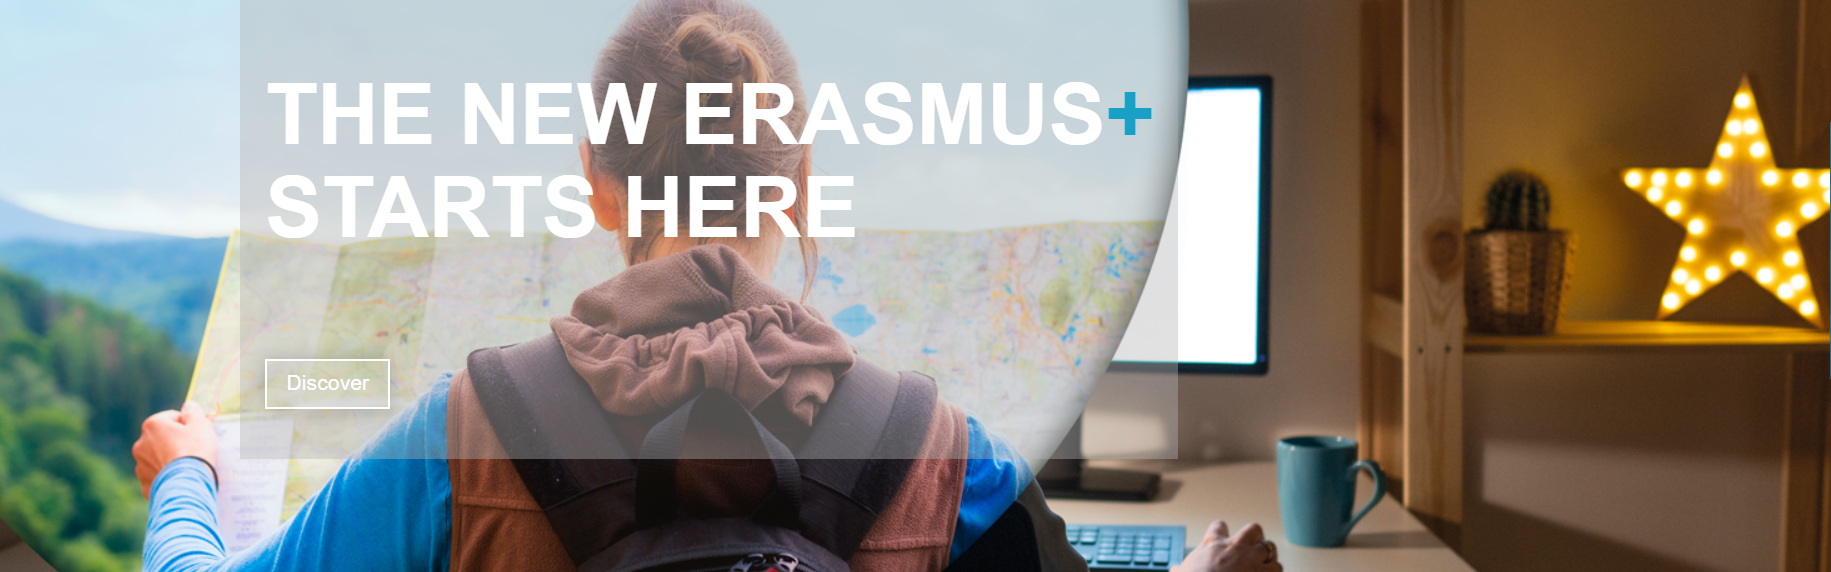 Erasmus starts here 1